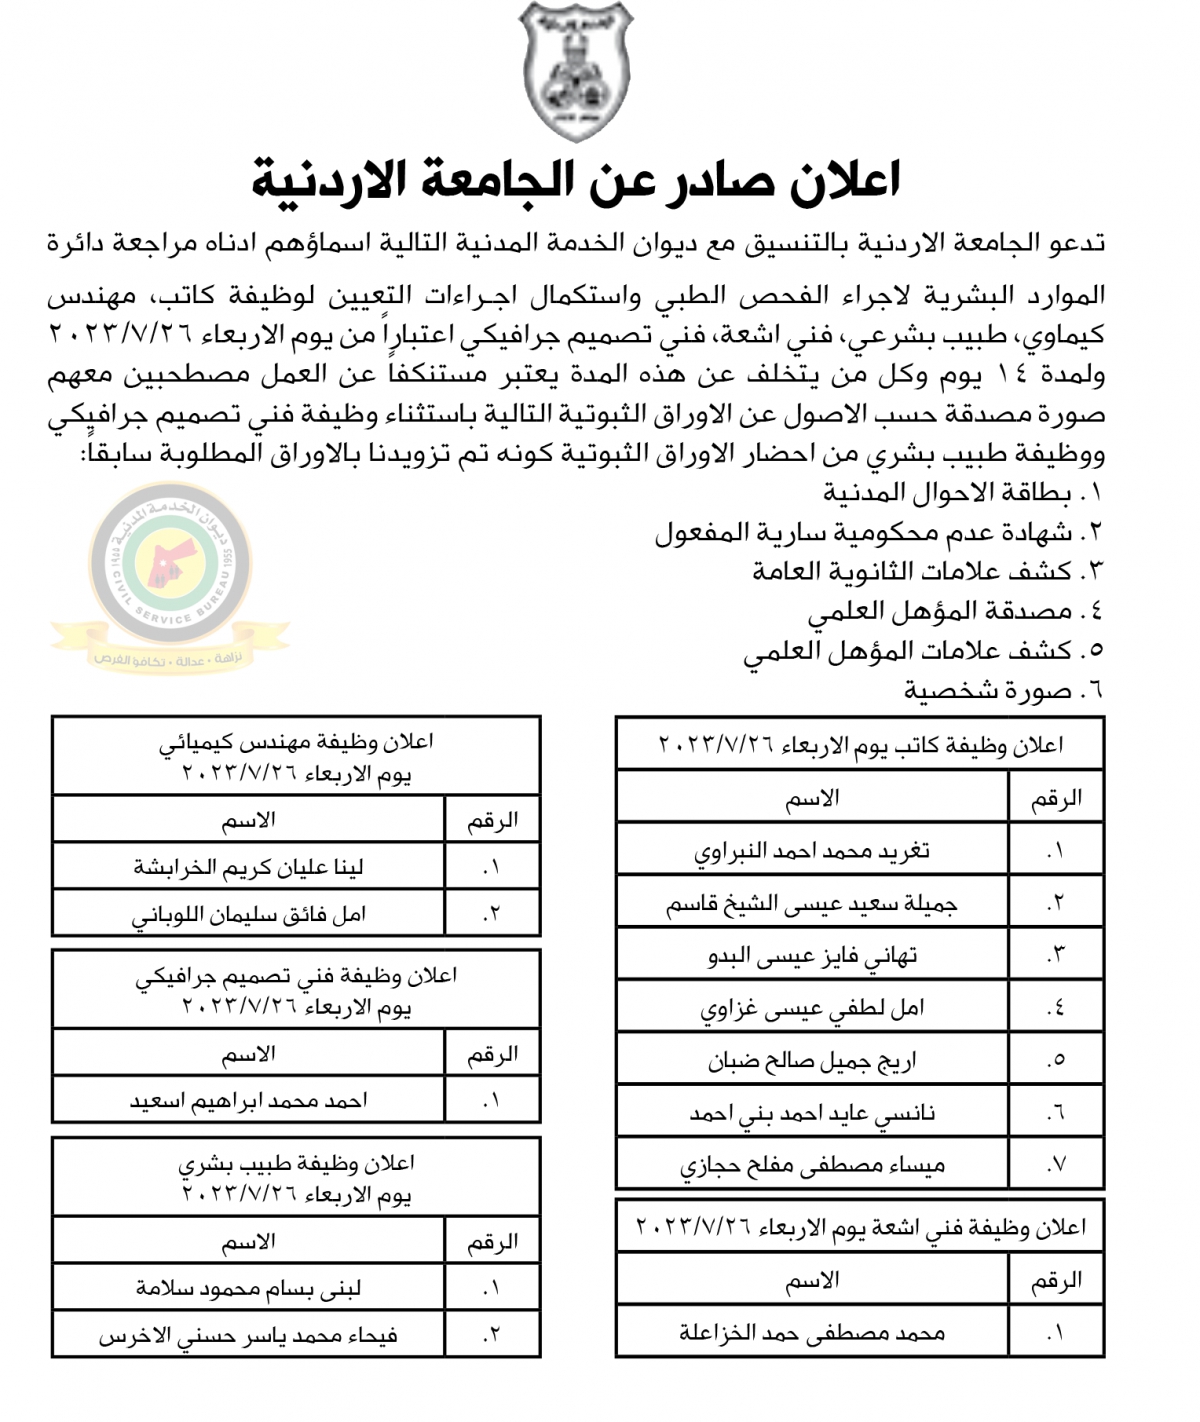 اعلان استكمال اجراءات التعيين صادرعن الجامعة الأردنية